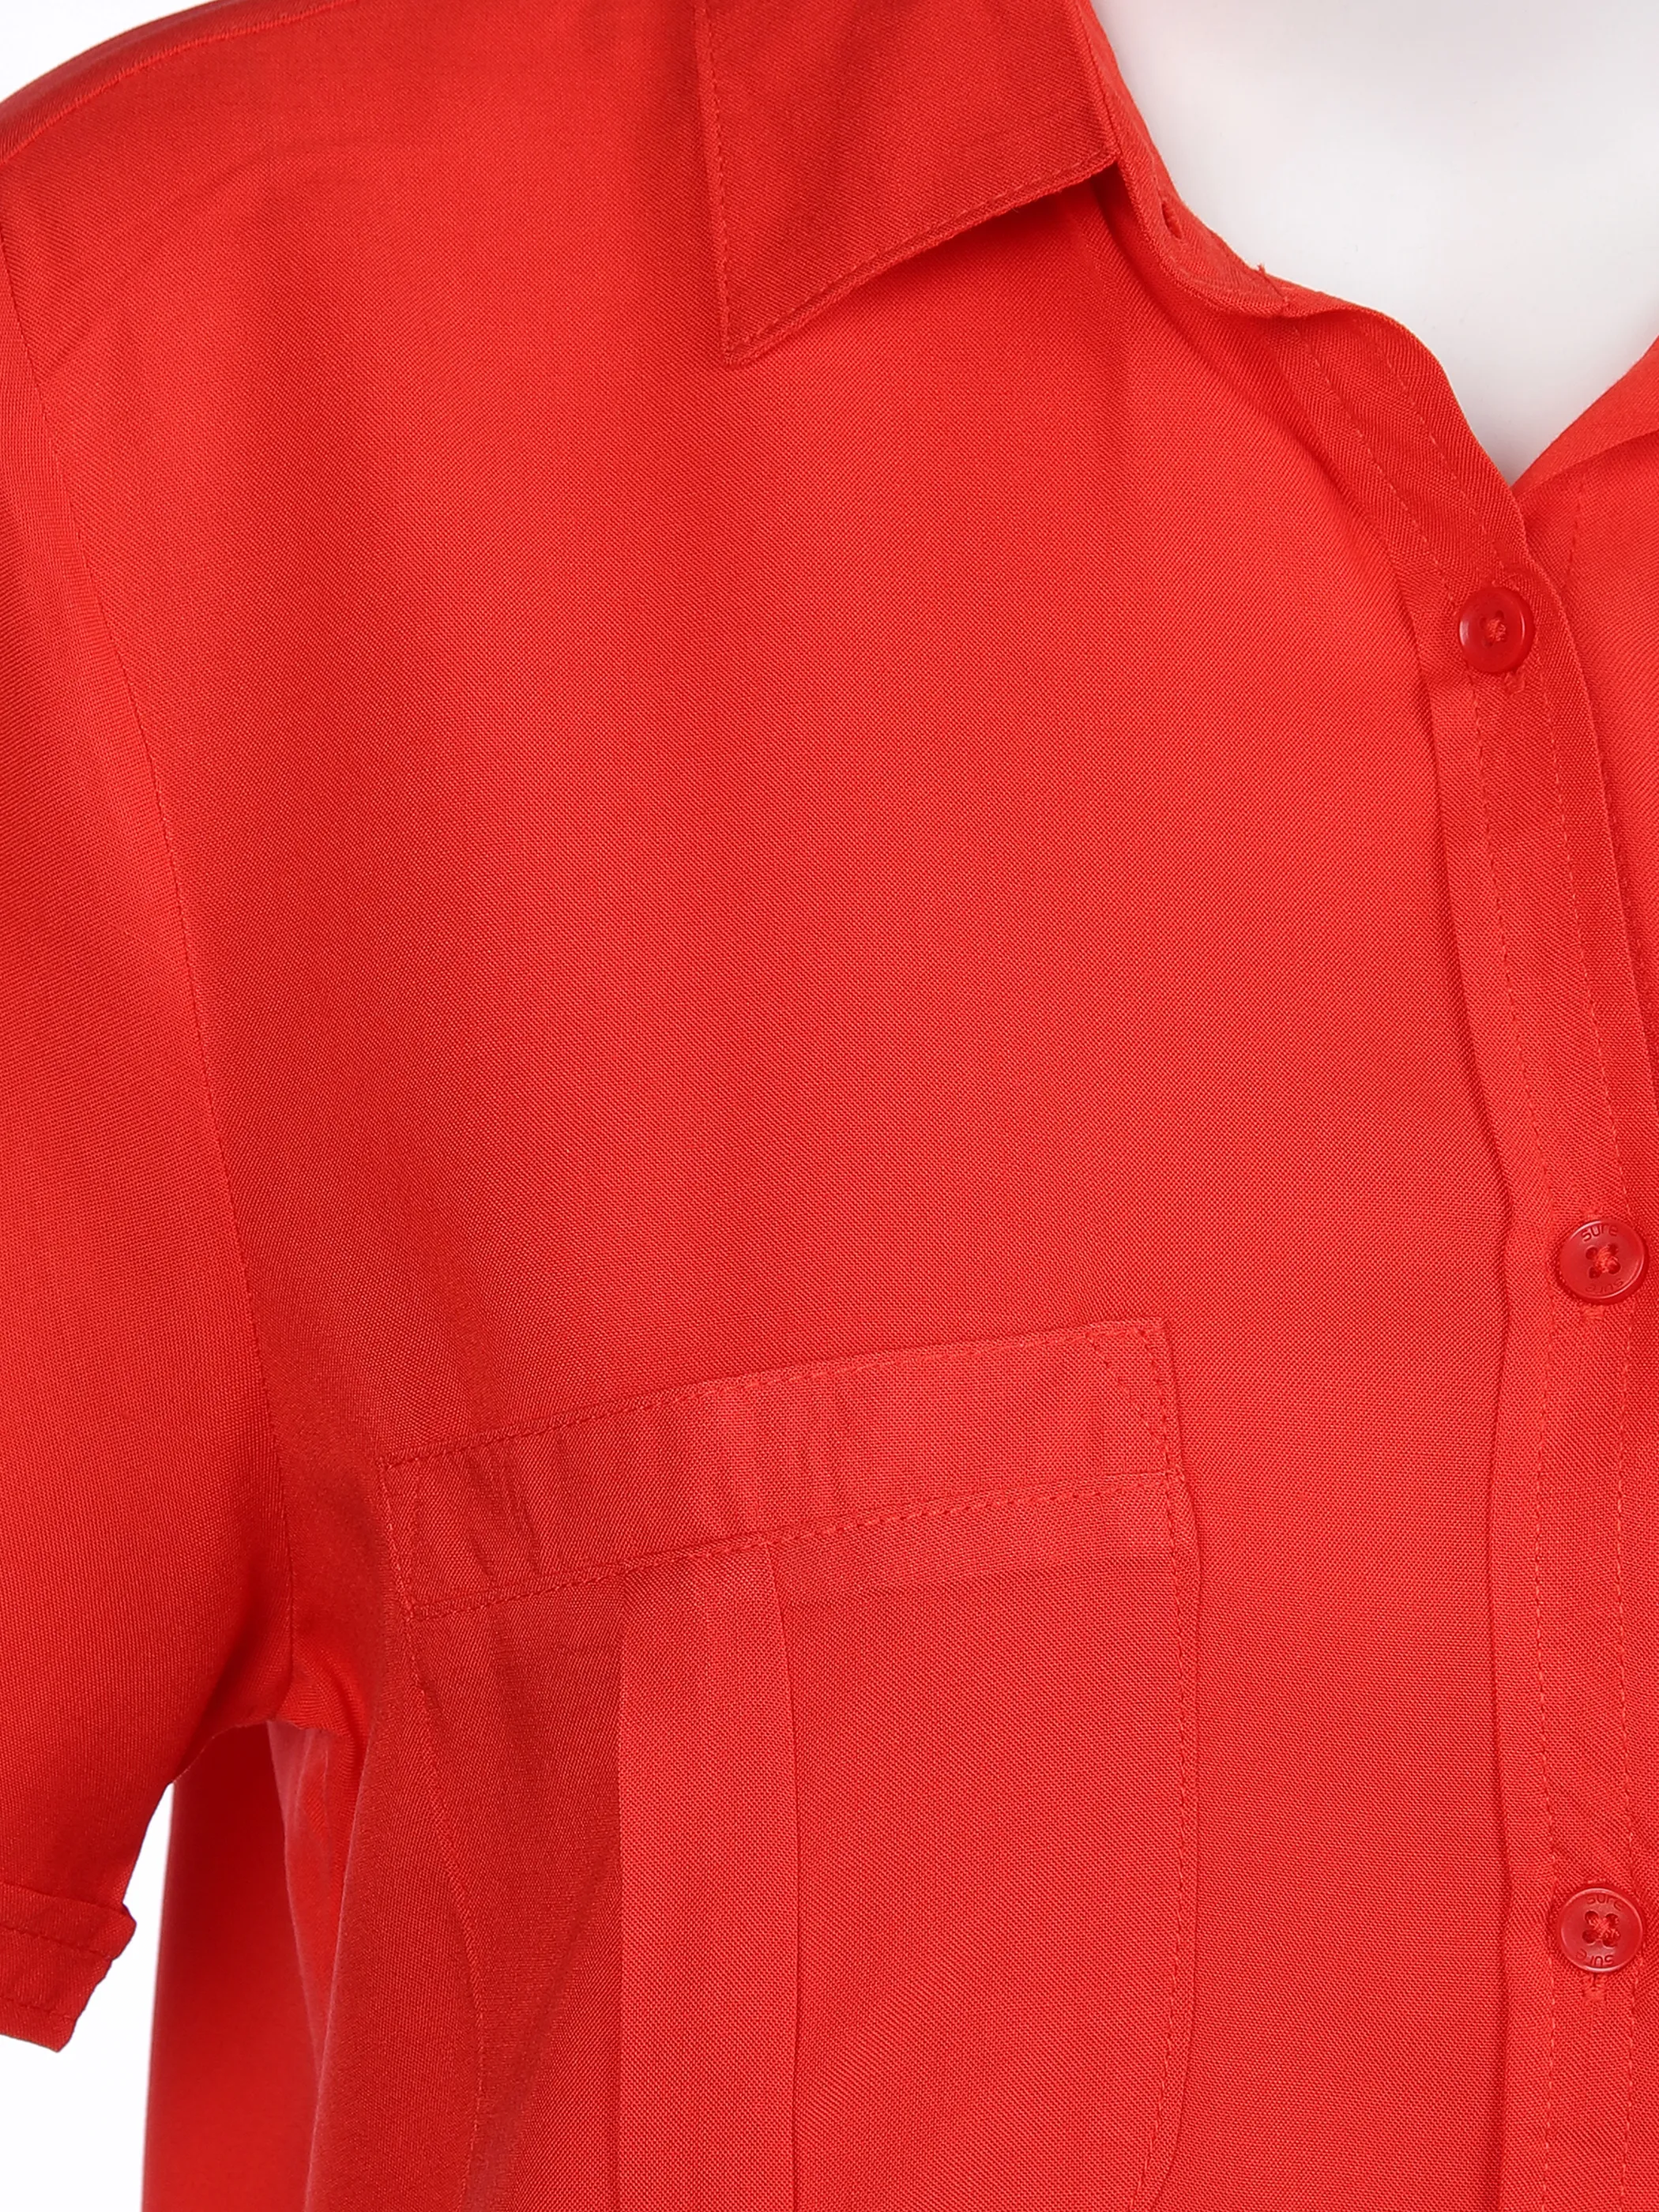 Damen Bluse mit Brusttaschen | RED | 36 | 863034-red-7